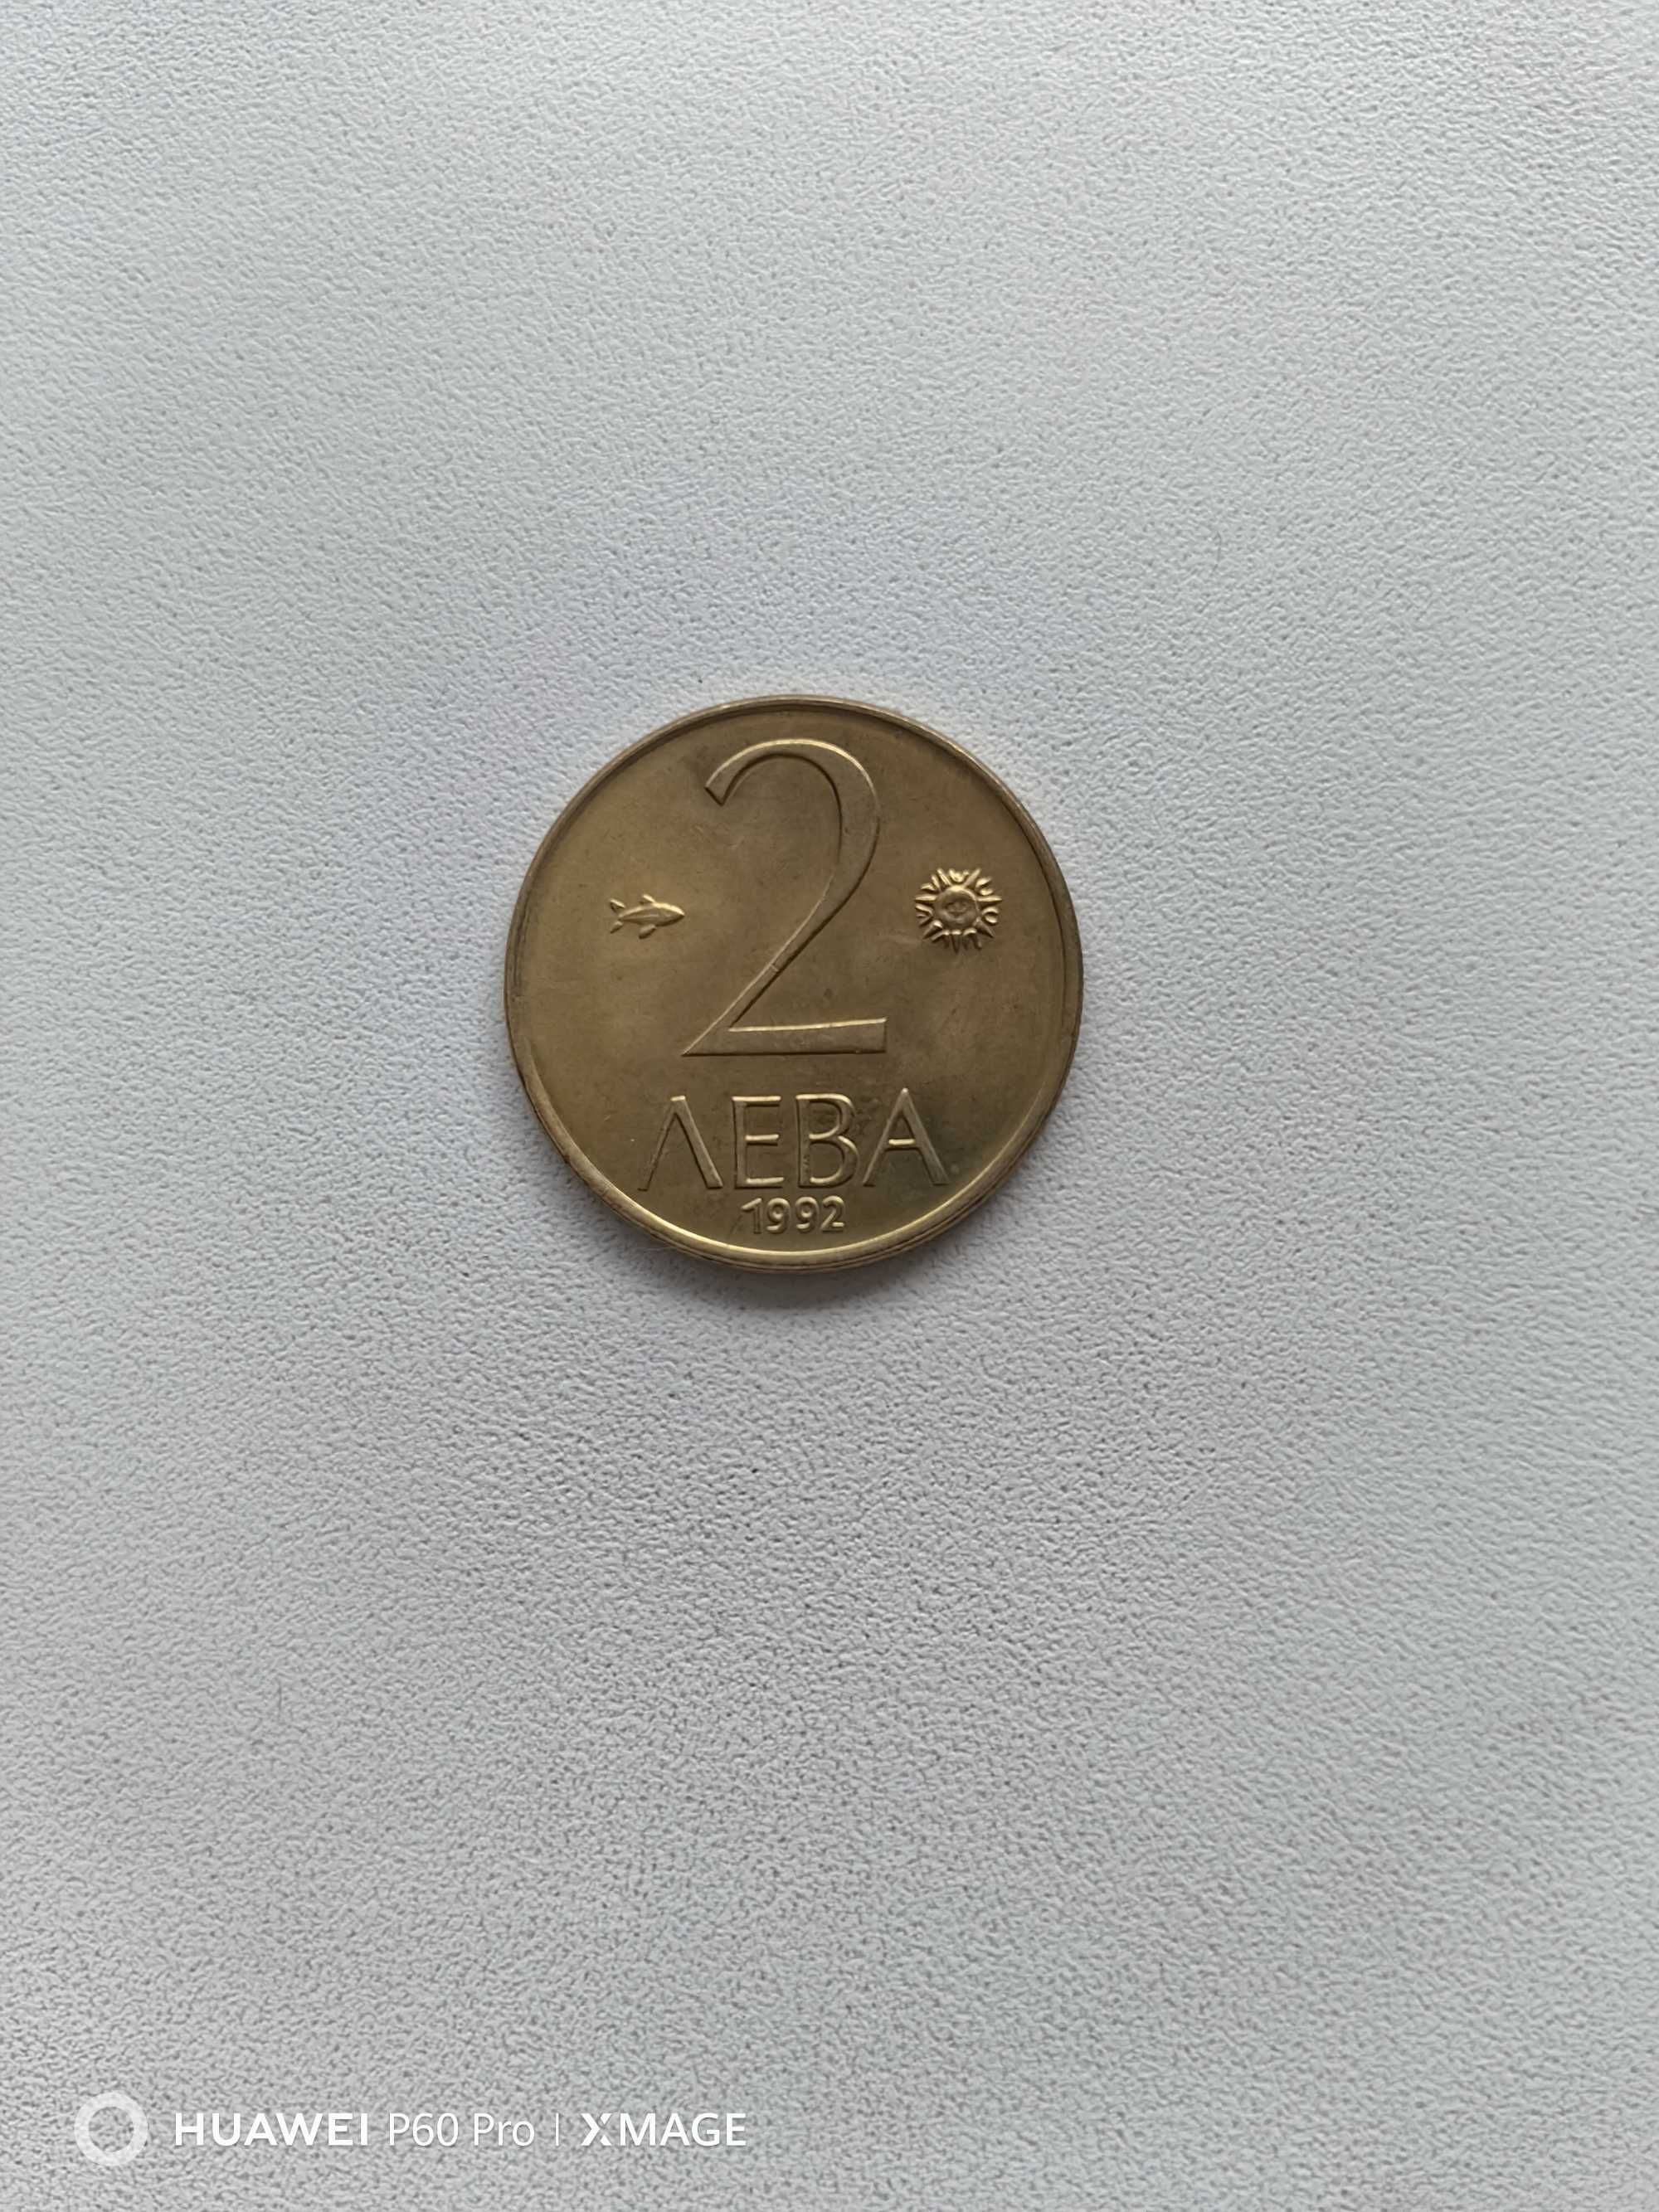 Антични монети 1 лв, 2 лв, 5 лв и 10 лв от 1992 г.